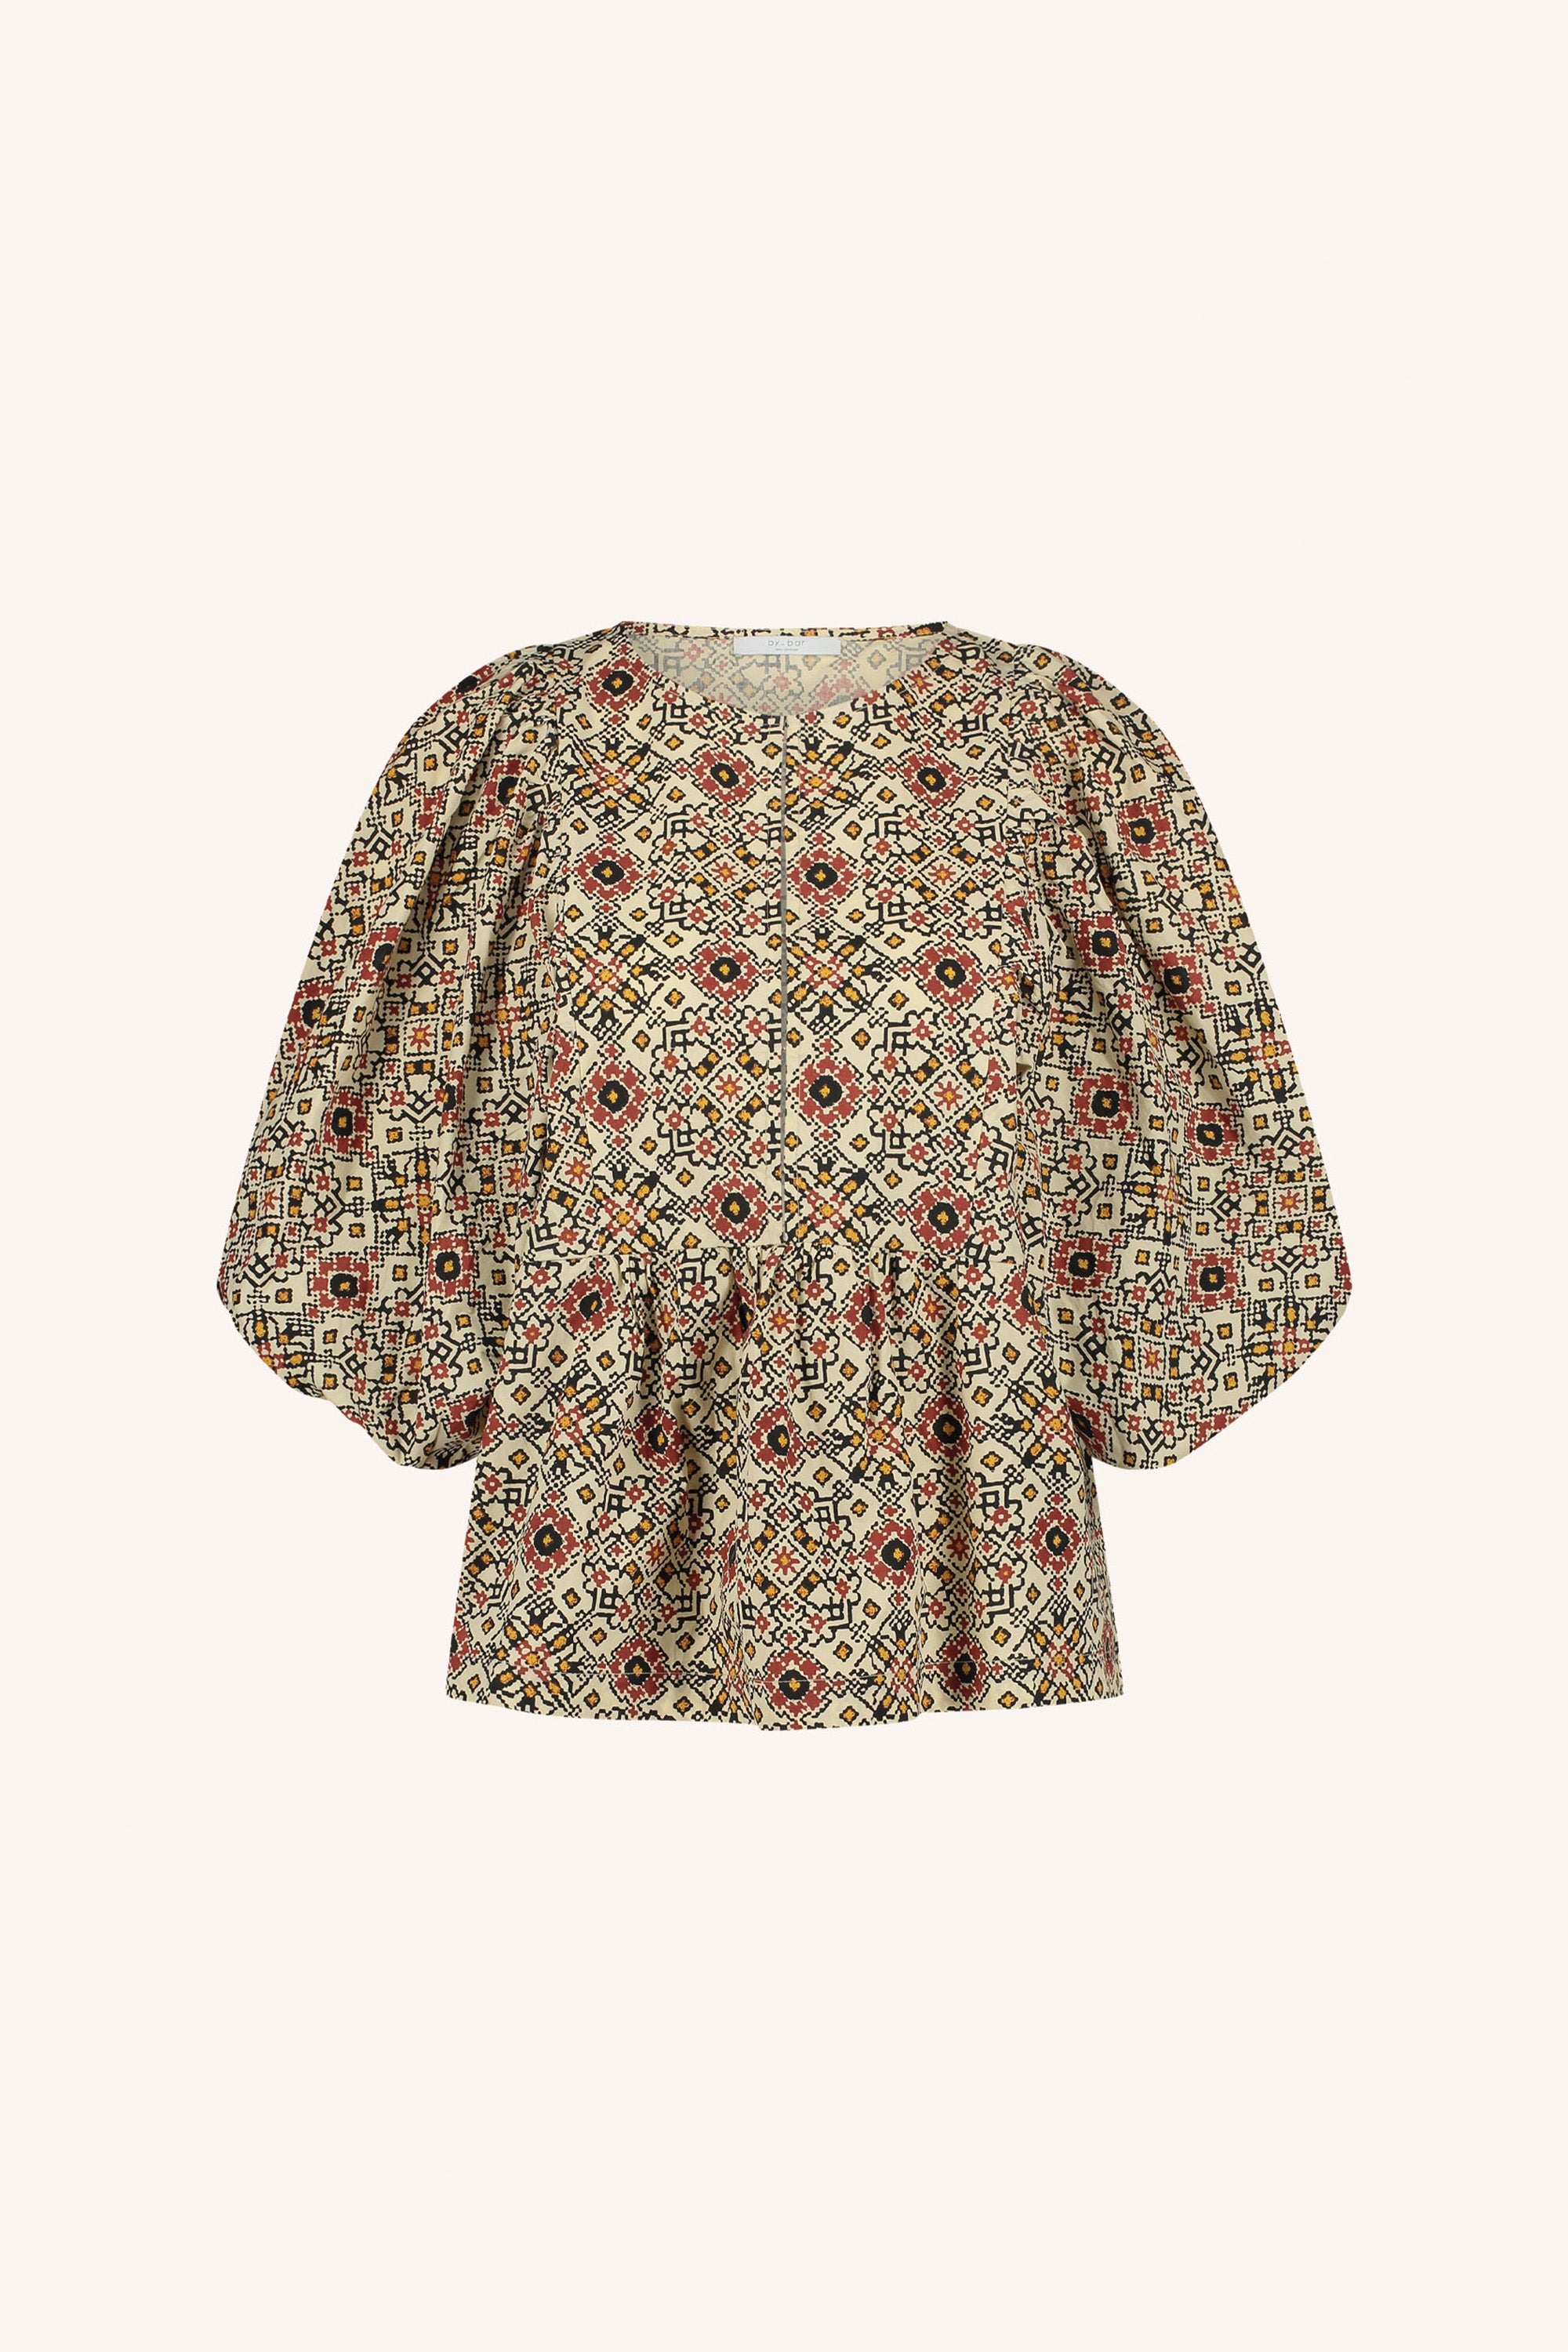 gabie rohin blouse | rohin print